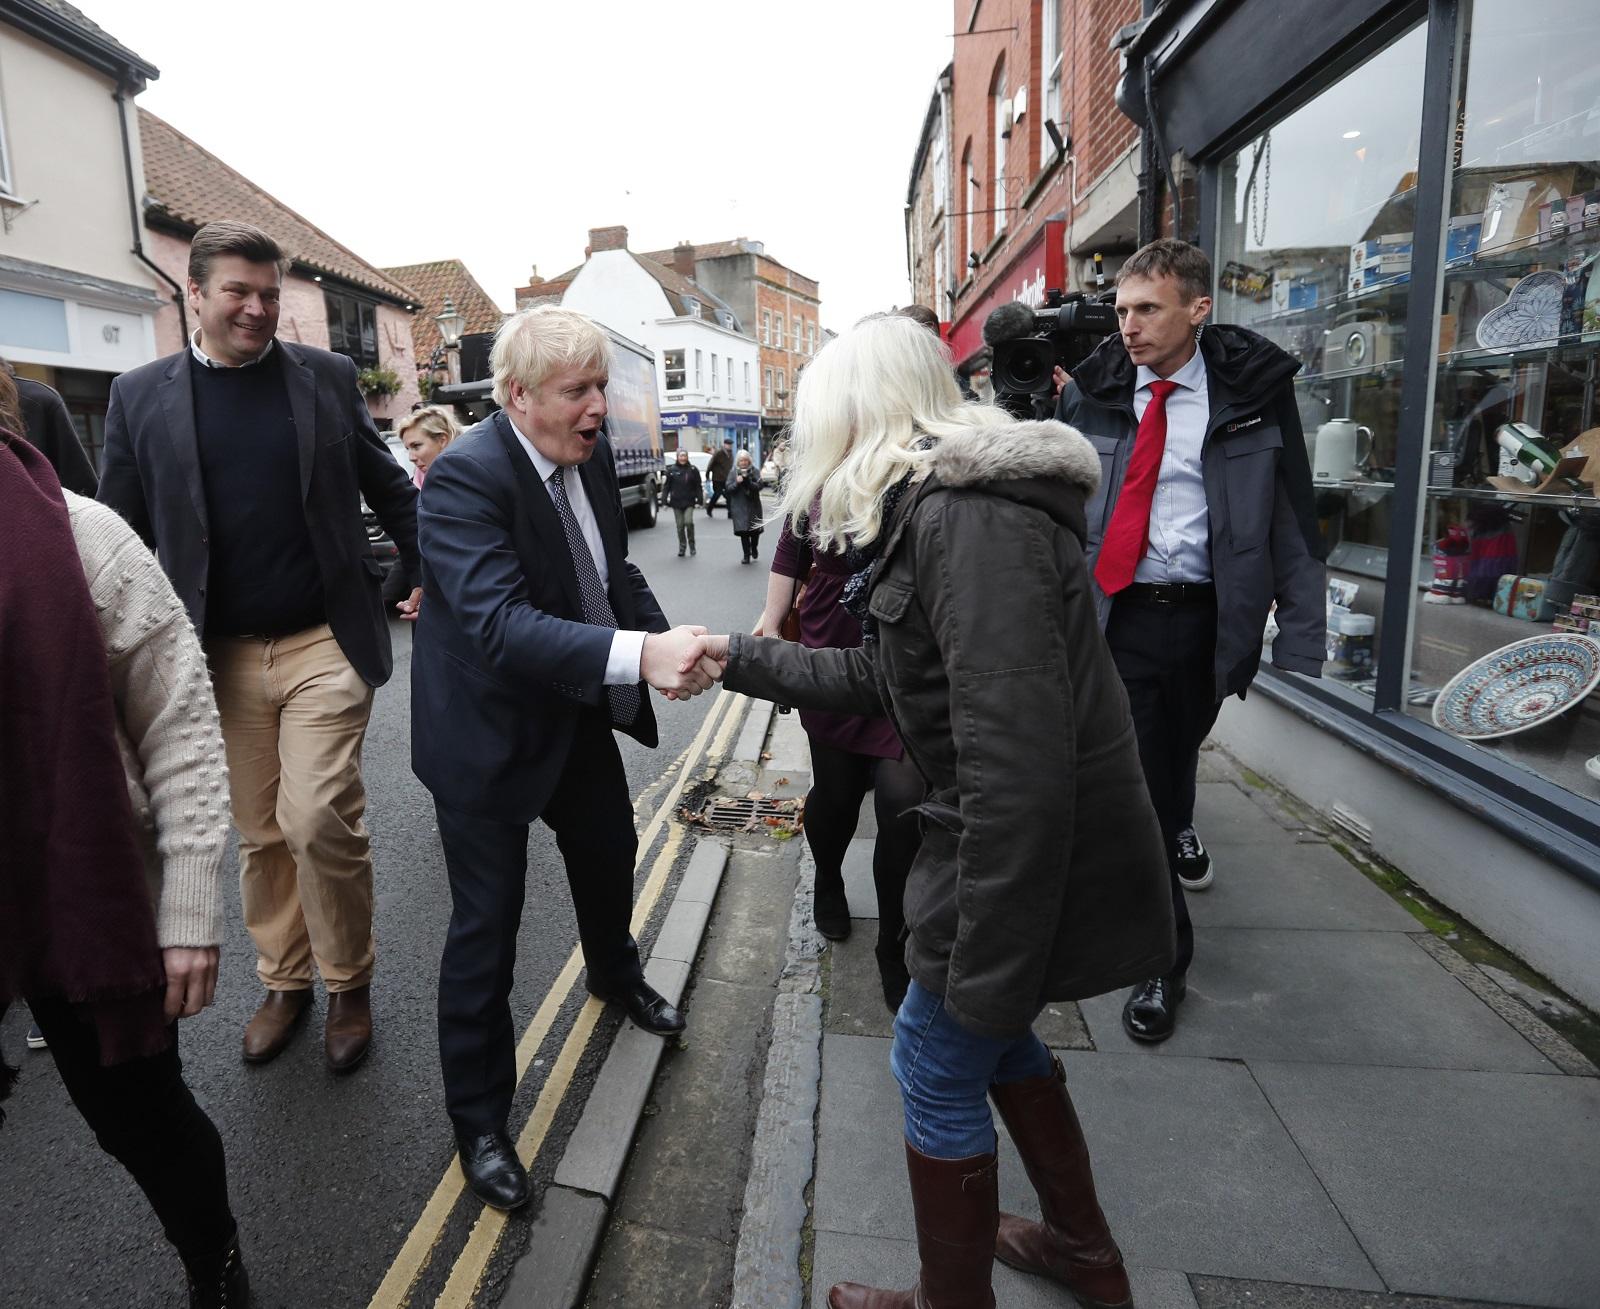 رئيس الوزراء البريطاني بوريس جونسون يصافح فتاة أثناء توقف حملة الانتخابات العامة جنوب غرب إنجلترا. 14 نوفمبر 2019. (أ ف ب)